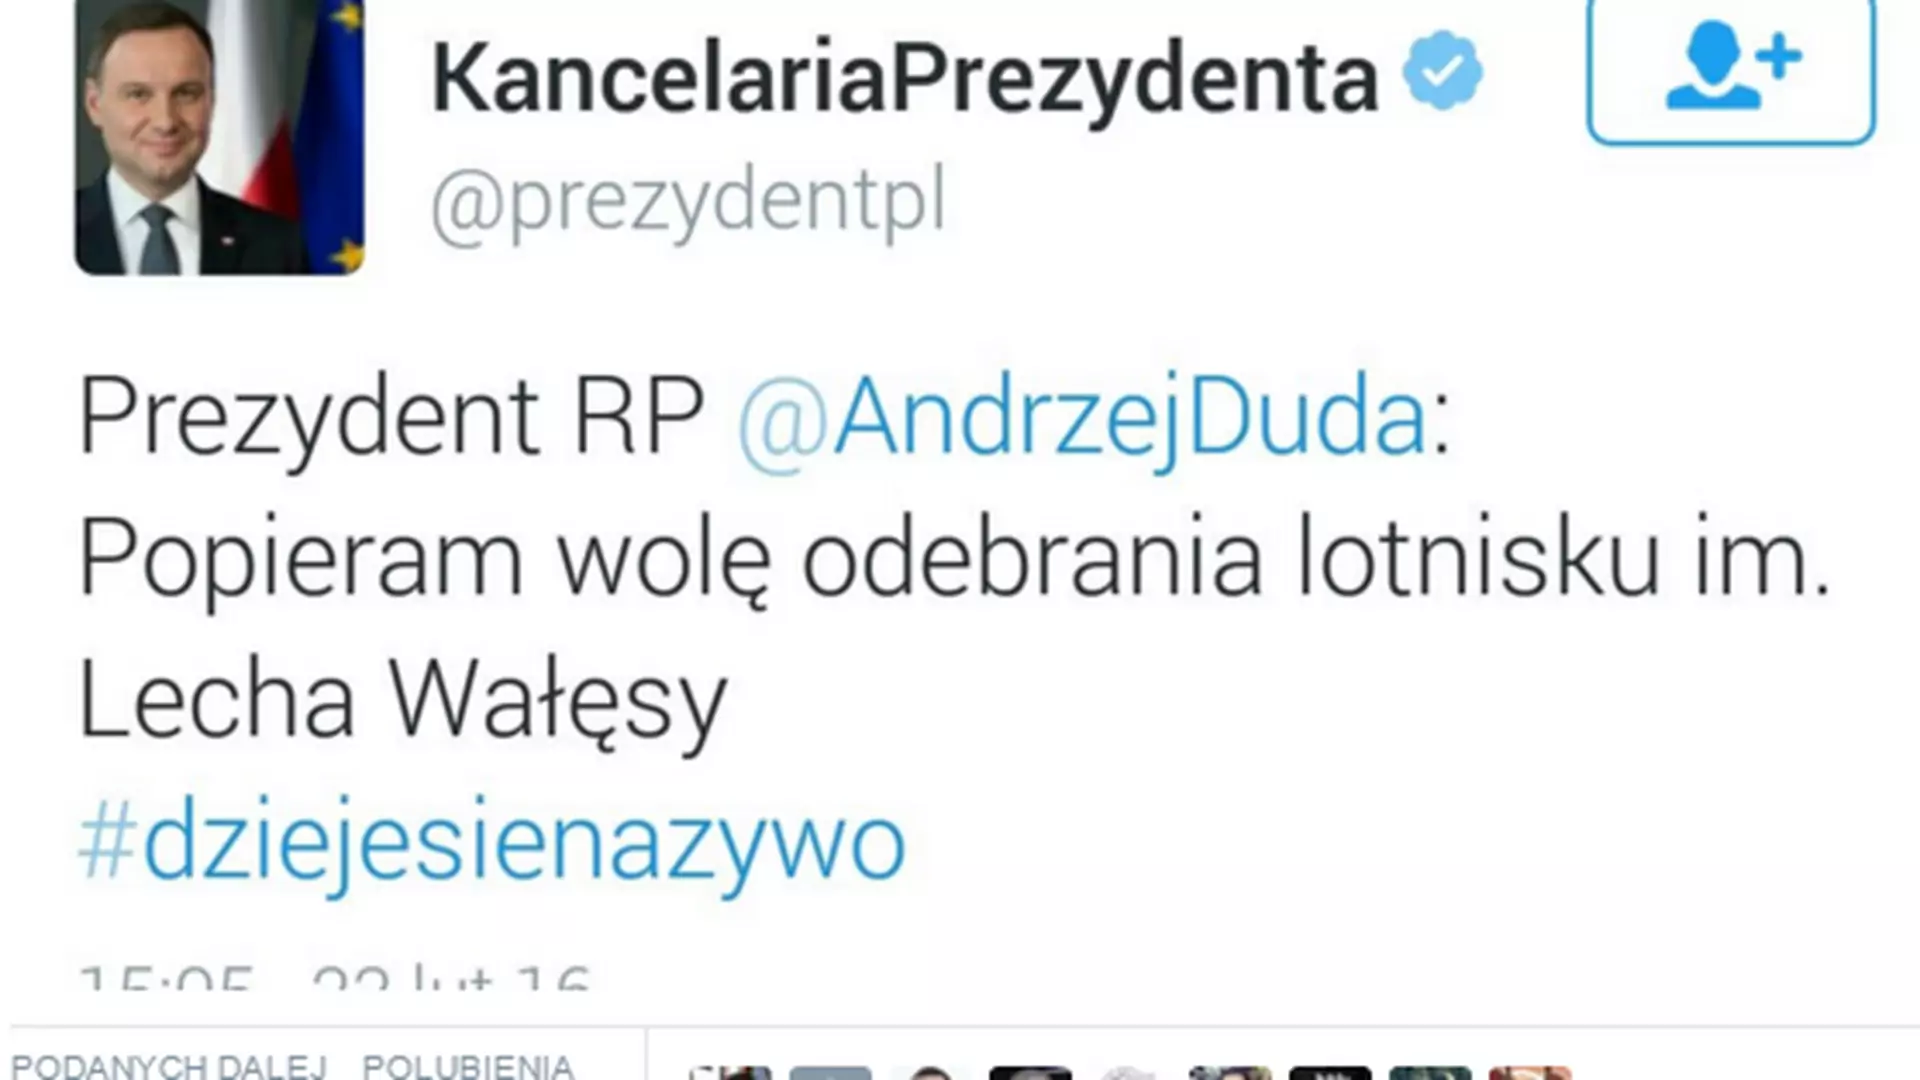 Zamieszanie z powodu wpisu na profilu Kancelarii Prezydenta. Tweet Andrzeja Dudy prawdziwy?